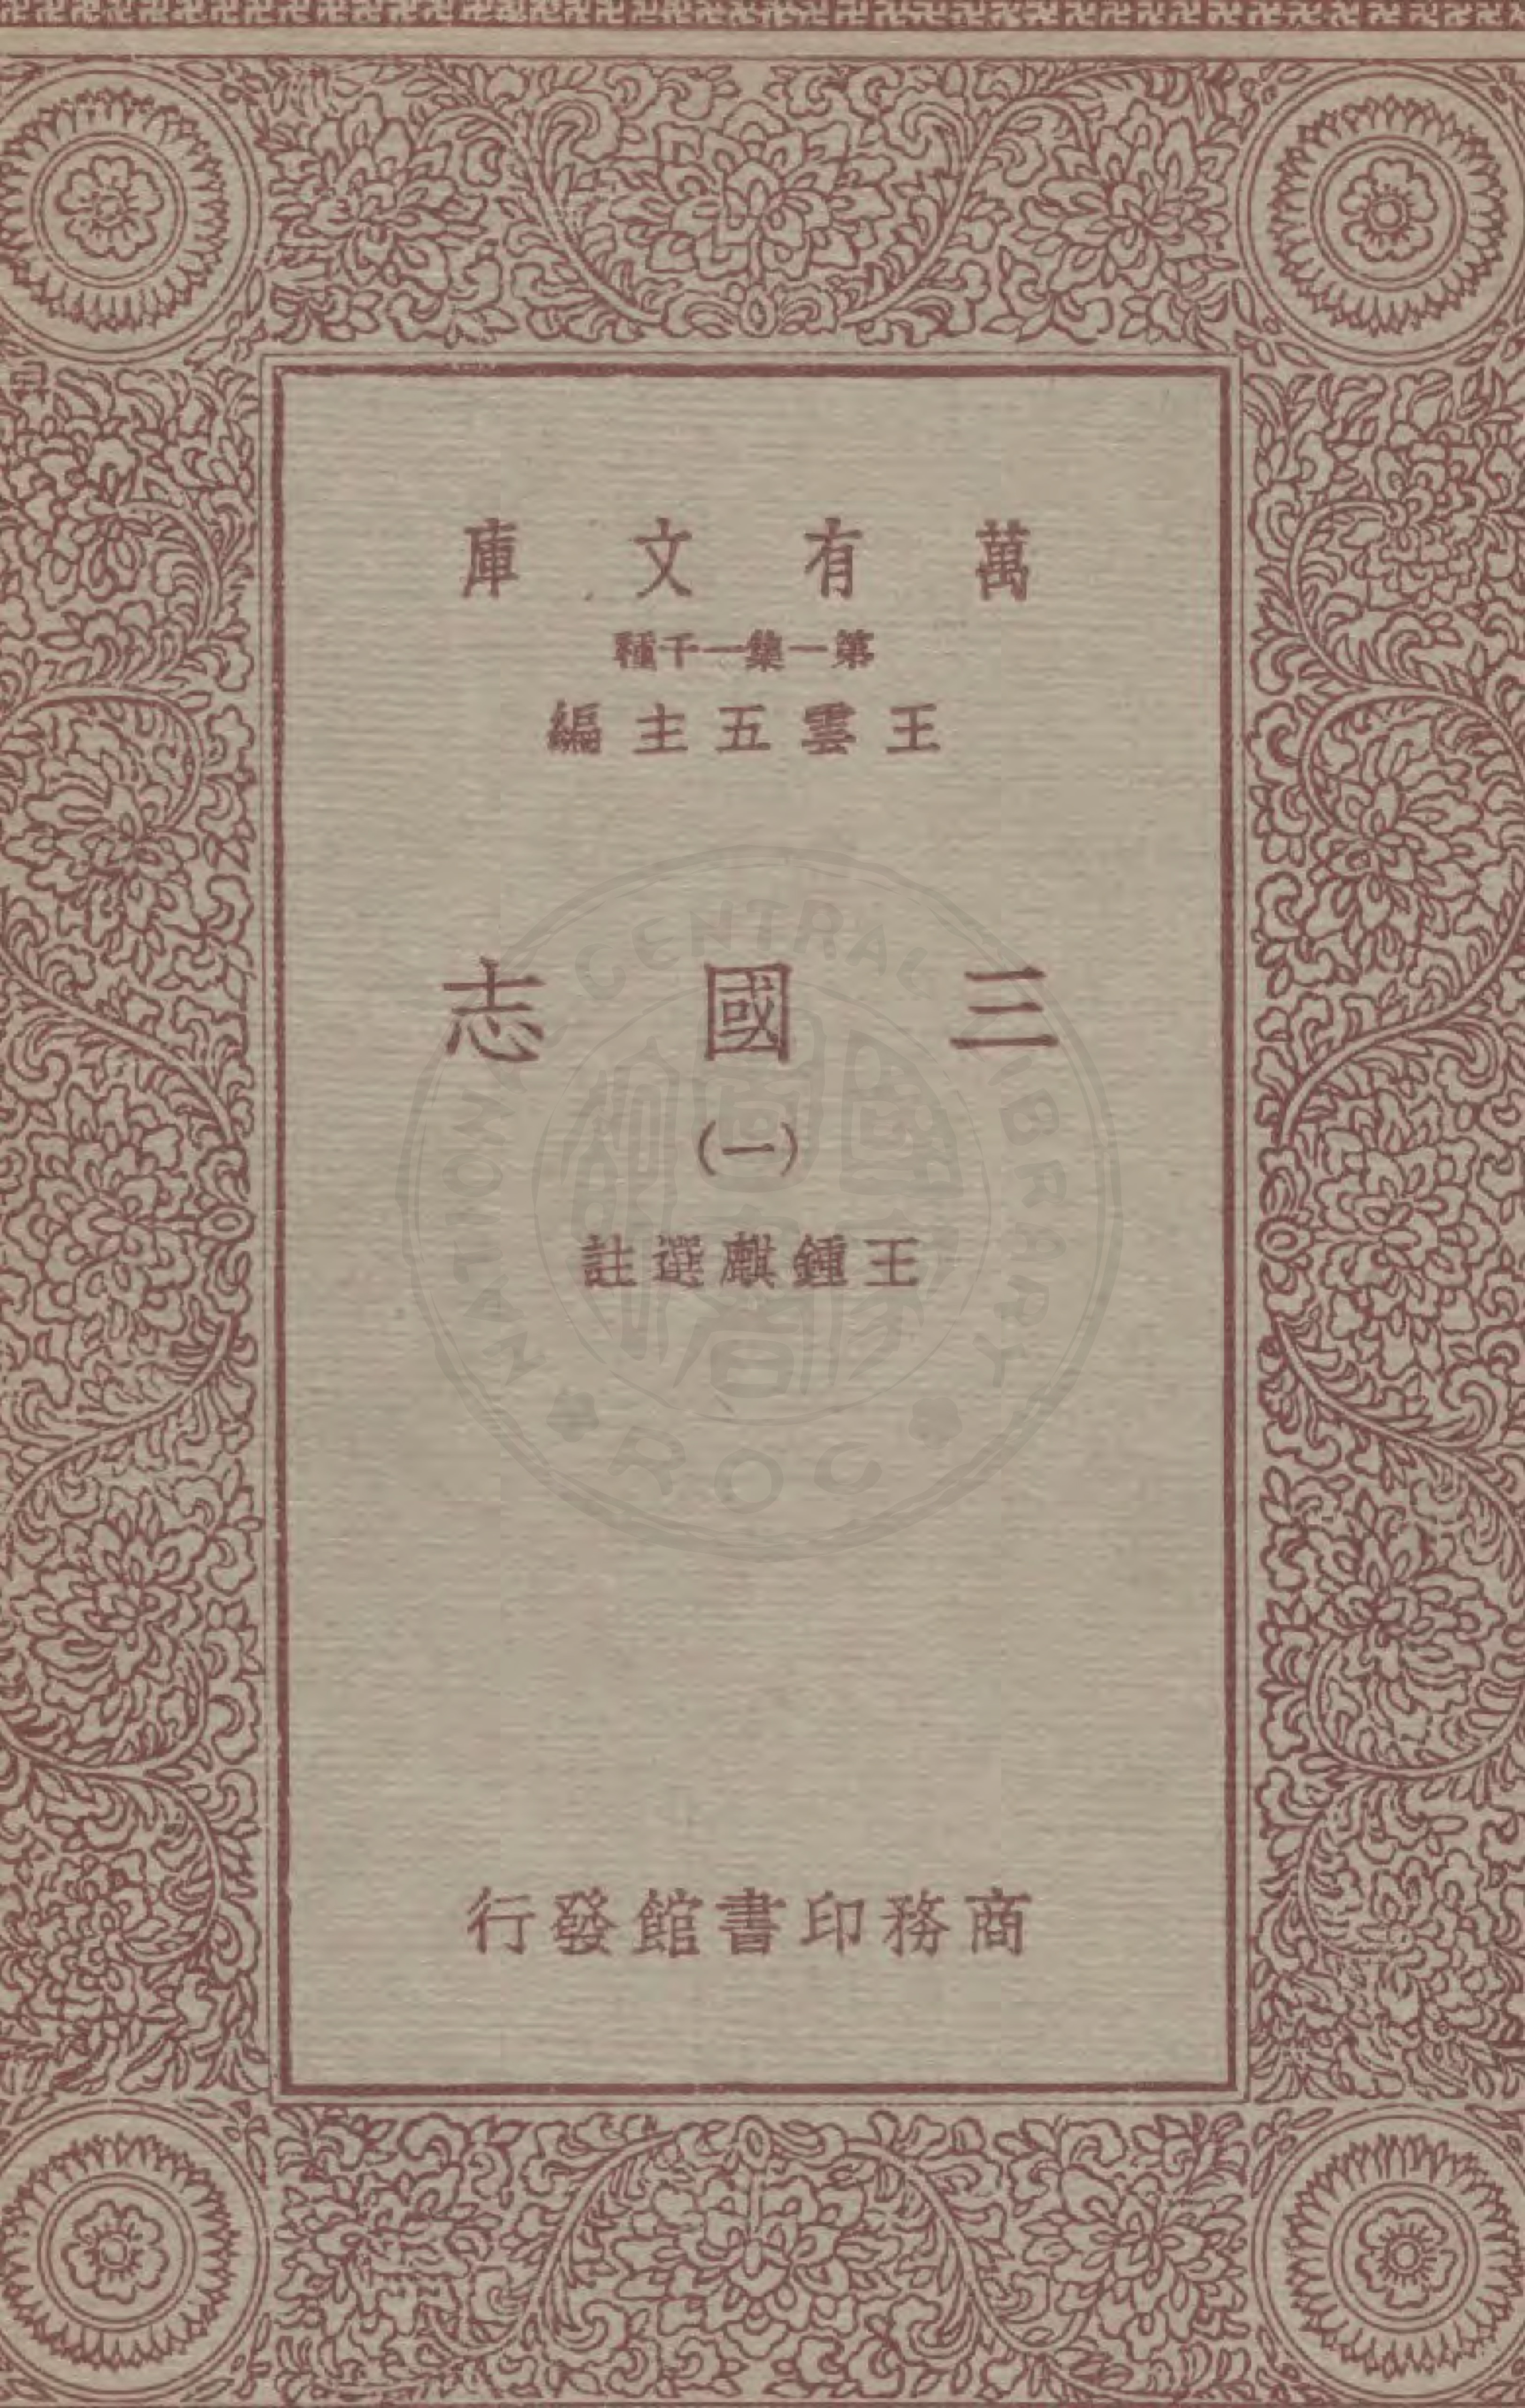 三国志 一册的书籍封面